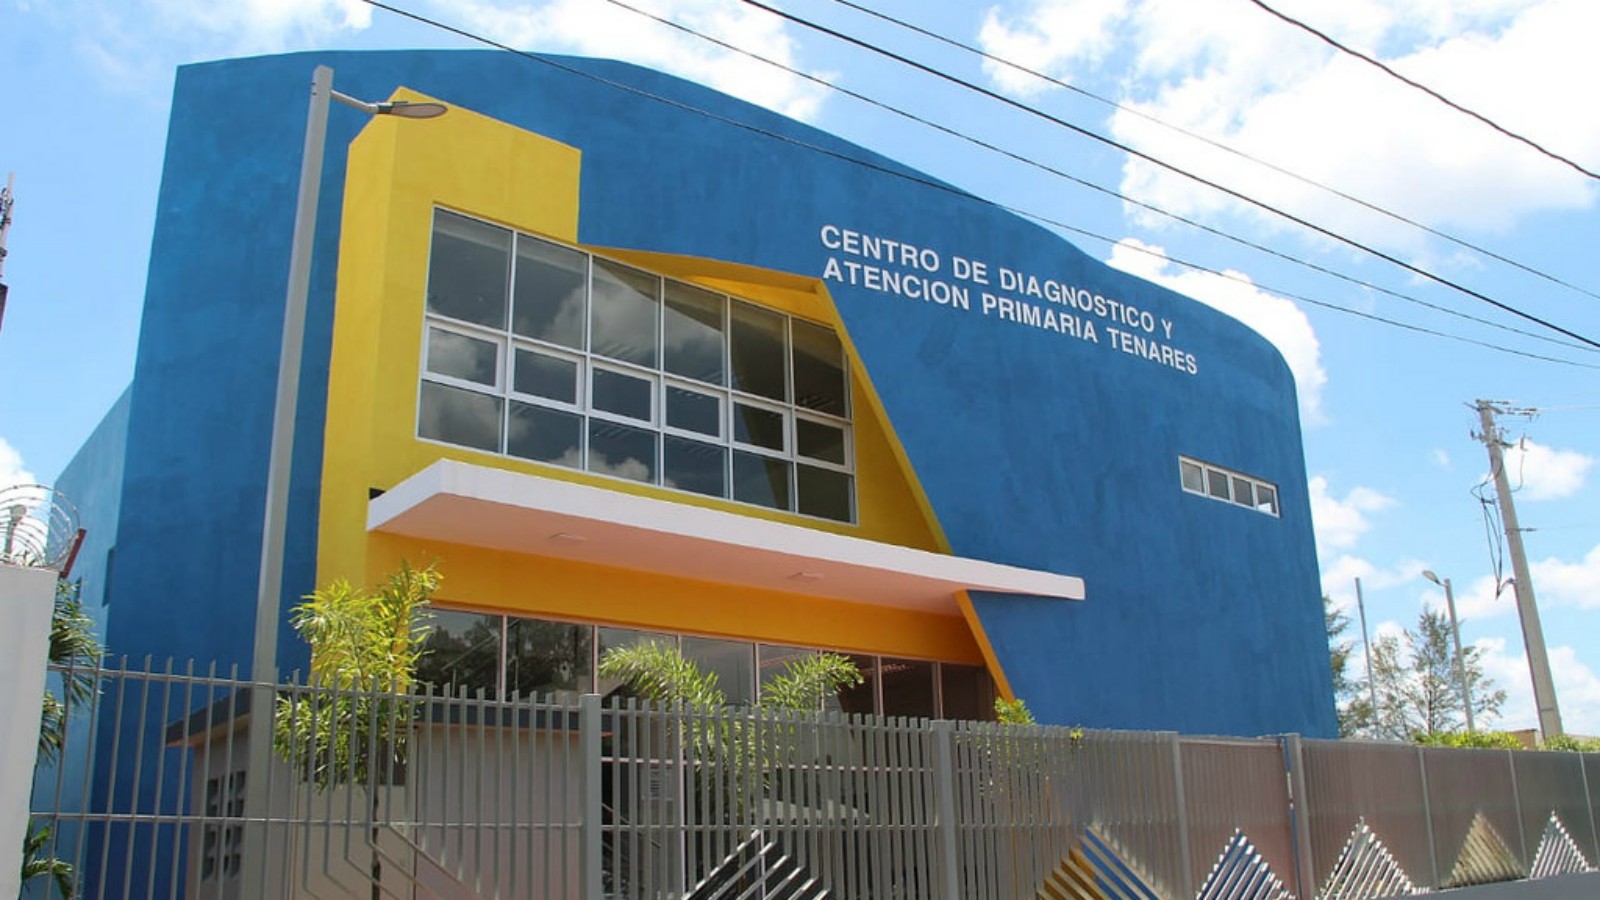 REPÚBLICA DOMINICANA: Hermanas Mirabal recibe Centro Diagnóstico y Atención Primaria y tres escuelas acogerán 875 estudiantes